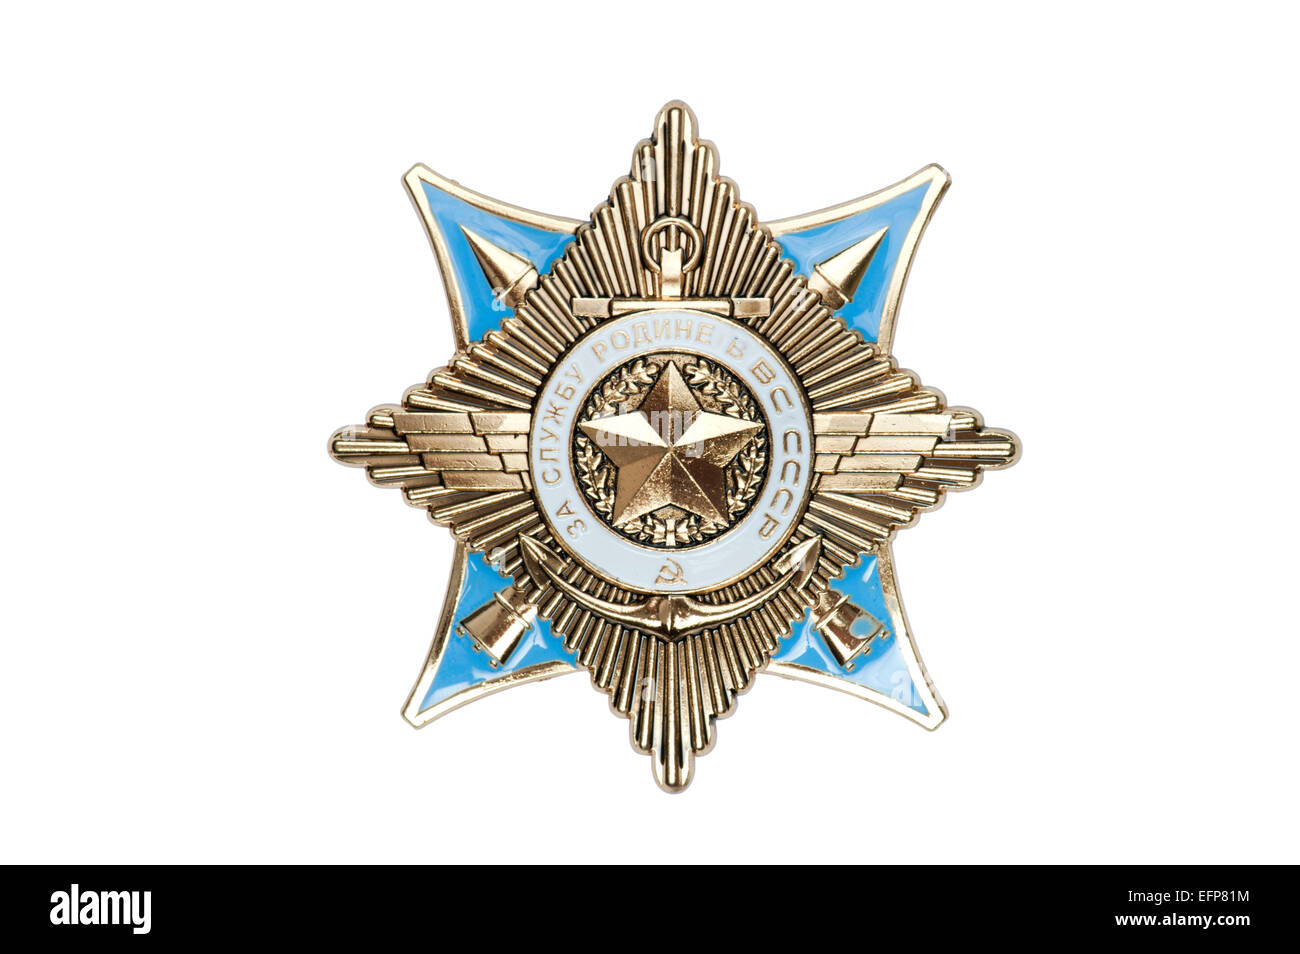 Premi dell'URSS distintivo della medaglia di servizio alla patria nelle forze armate dell'URSS Foto Stock